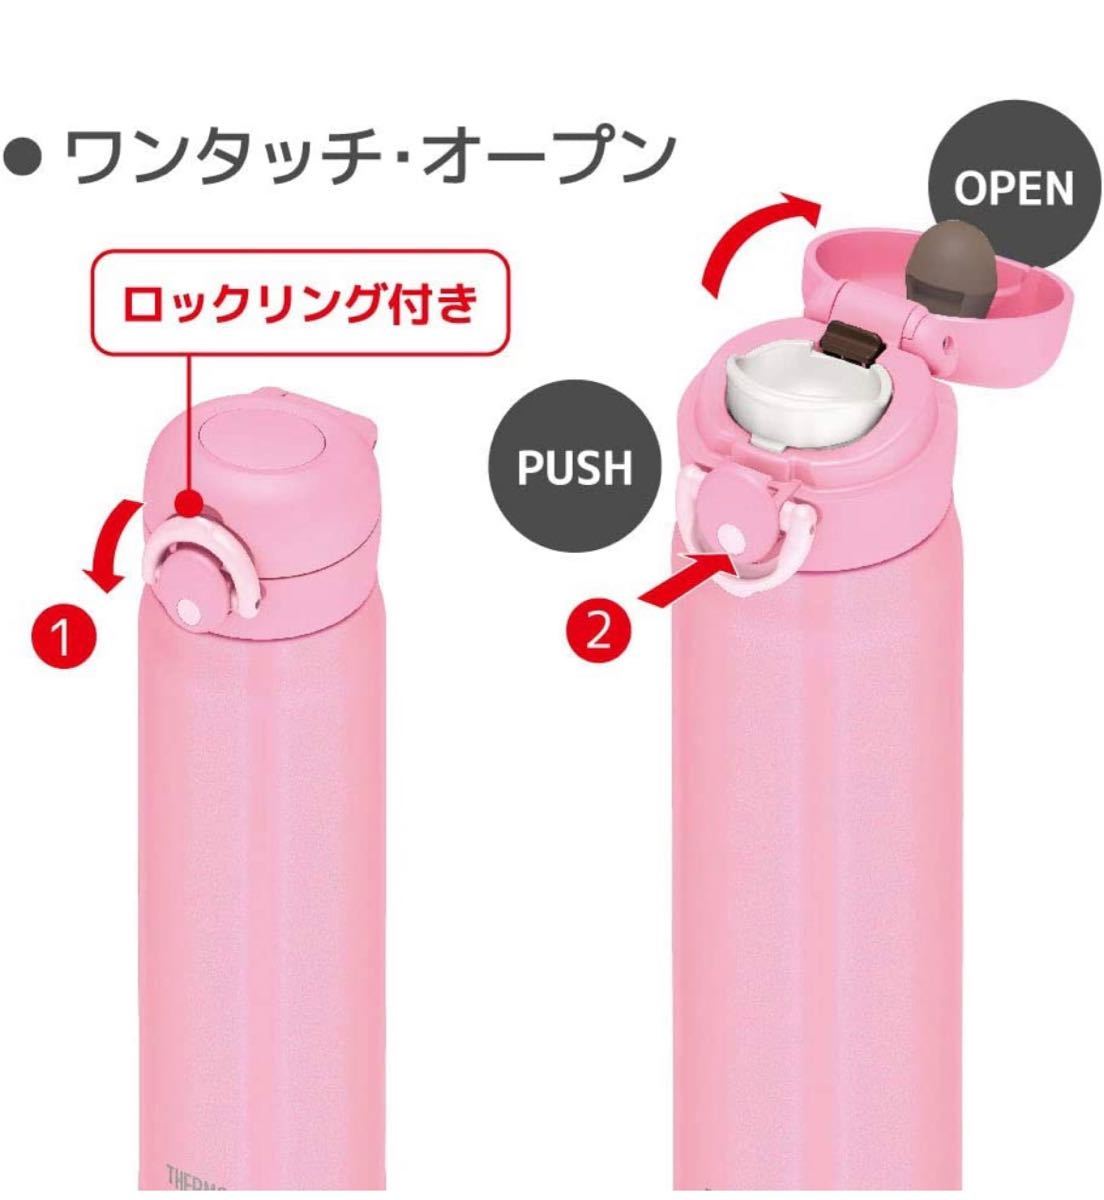 サーモス水筒 真空断熱ケータイマグワンタッチオープン ピンク 500ml